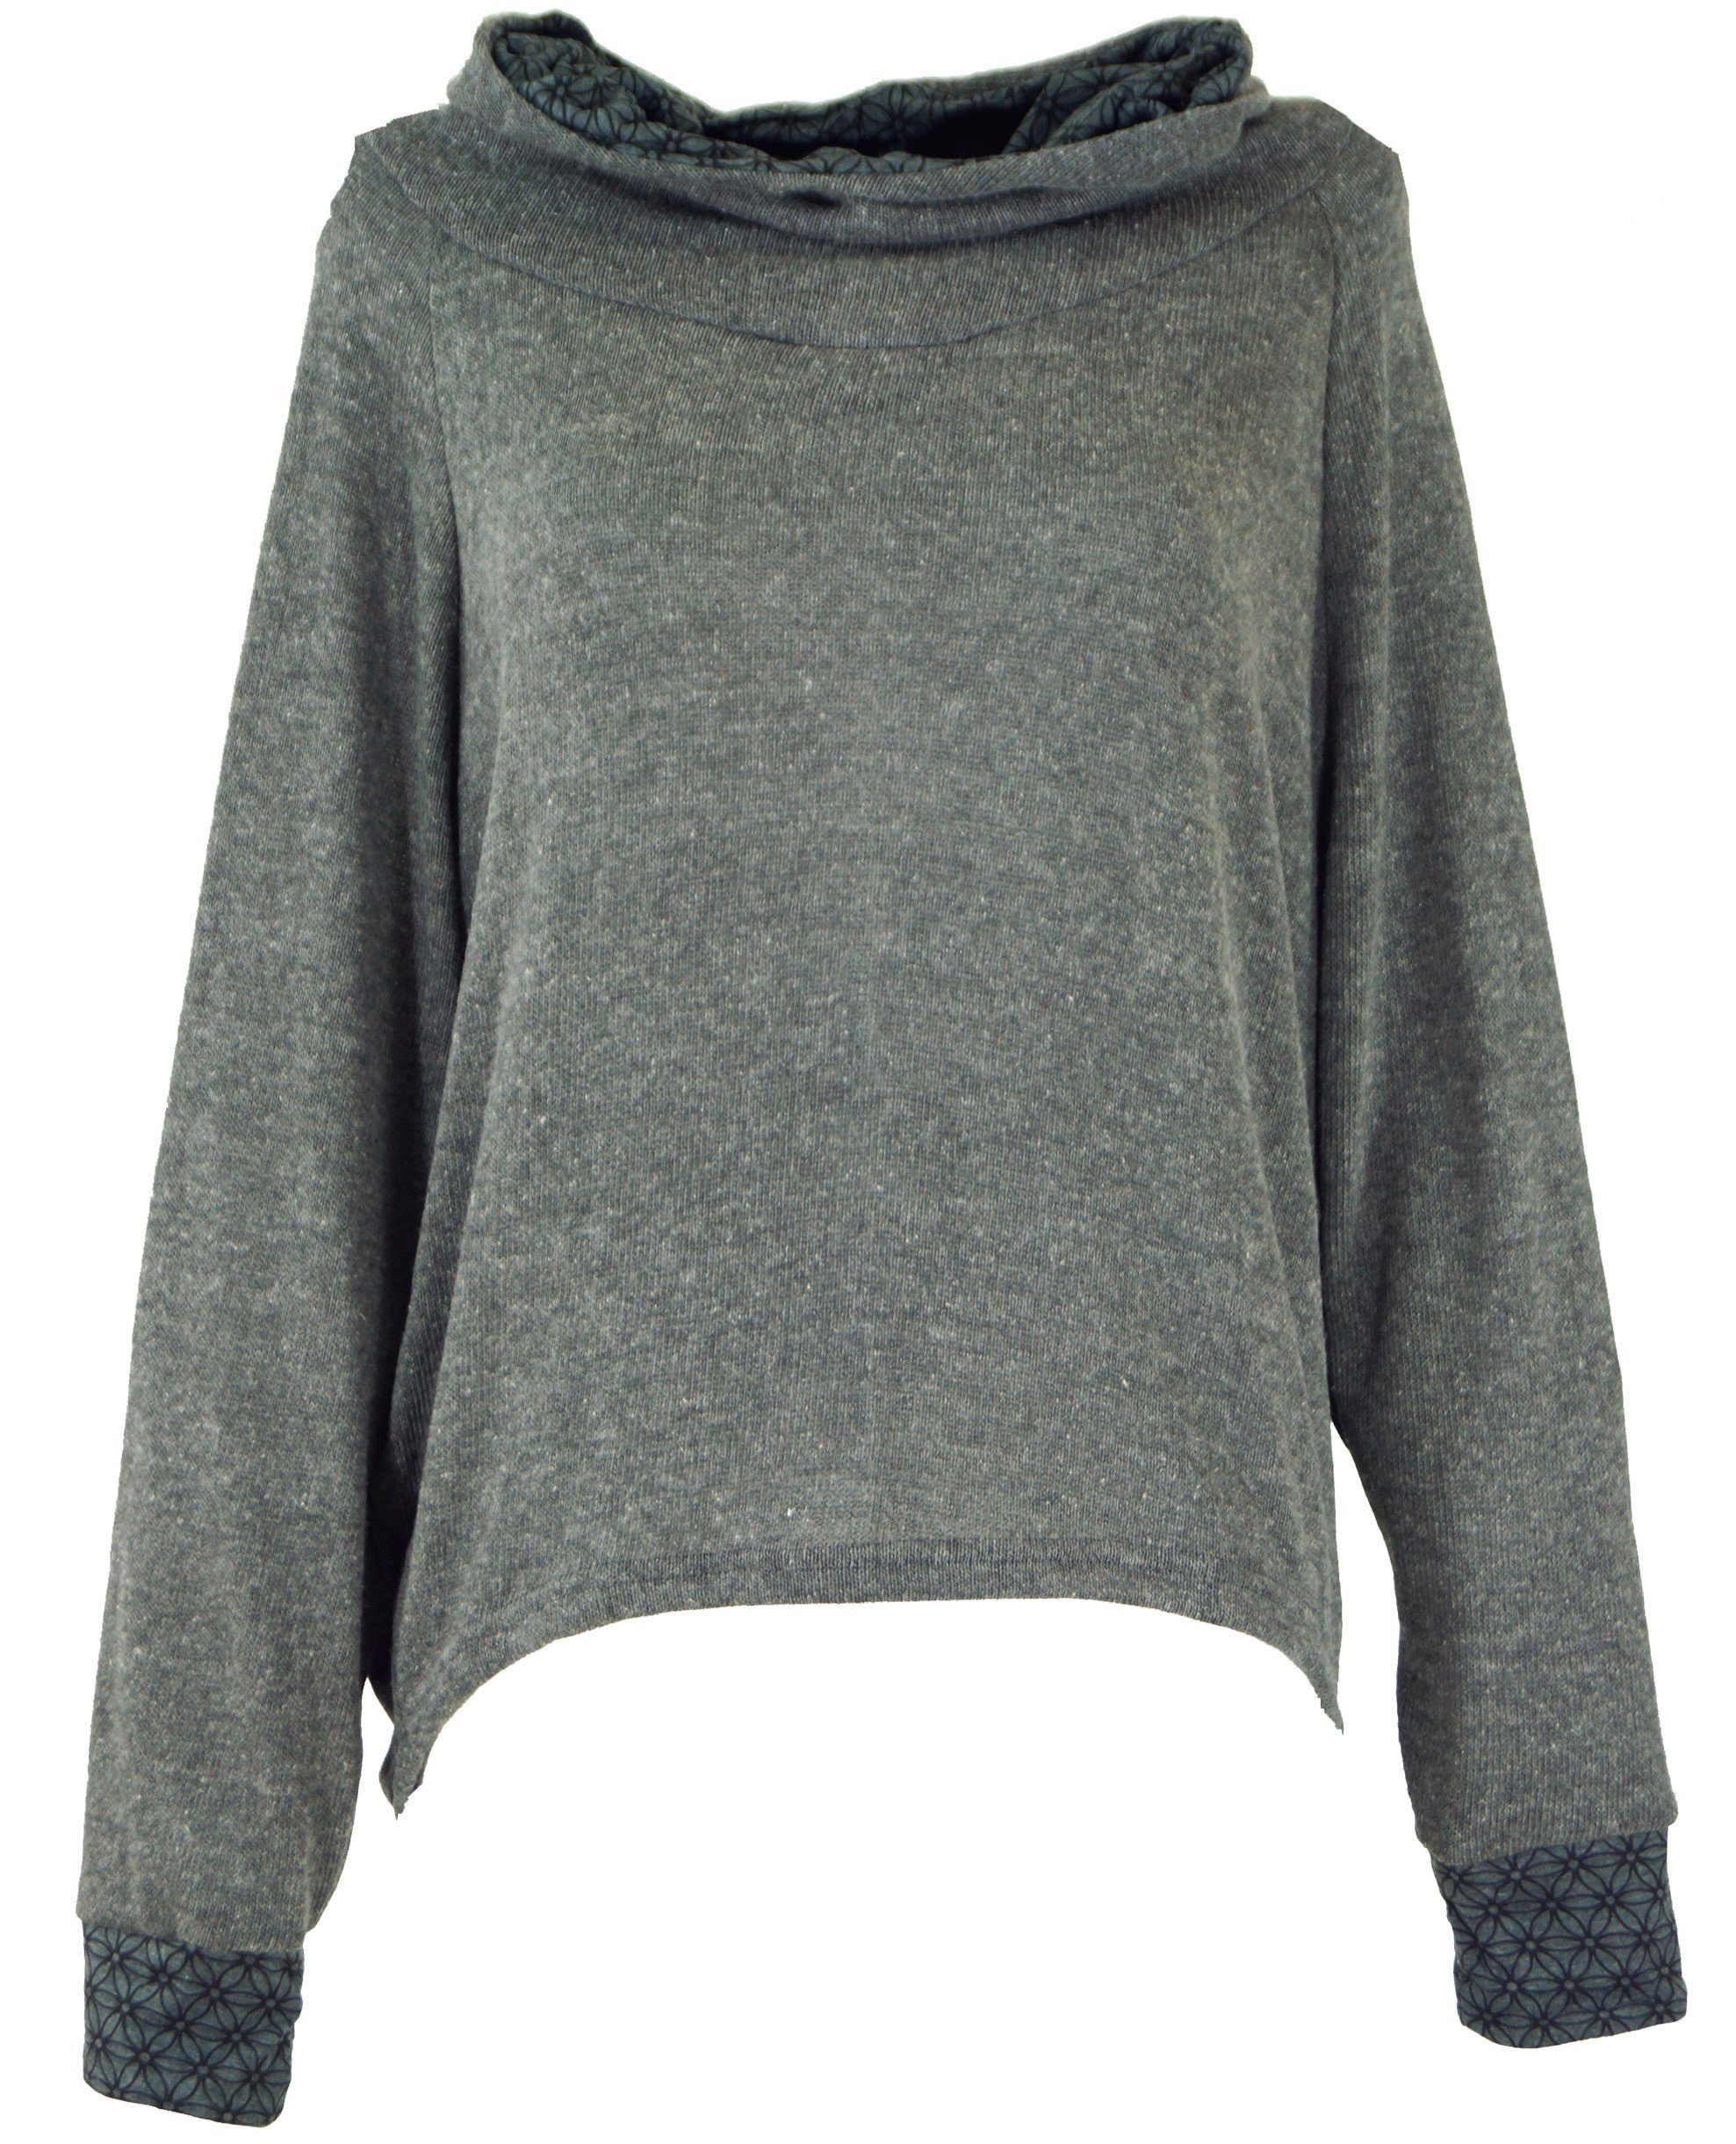 grau Bekleidung Hoody, Kapuzenpullover Longsleeve alternative Sweatshirt, Pullover, Guru-Shop -..